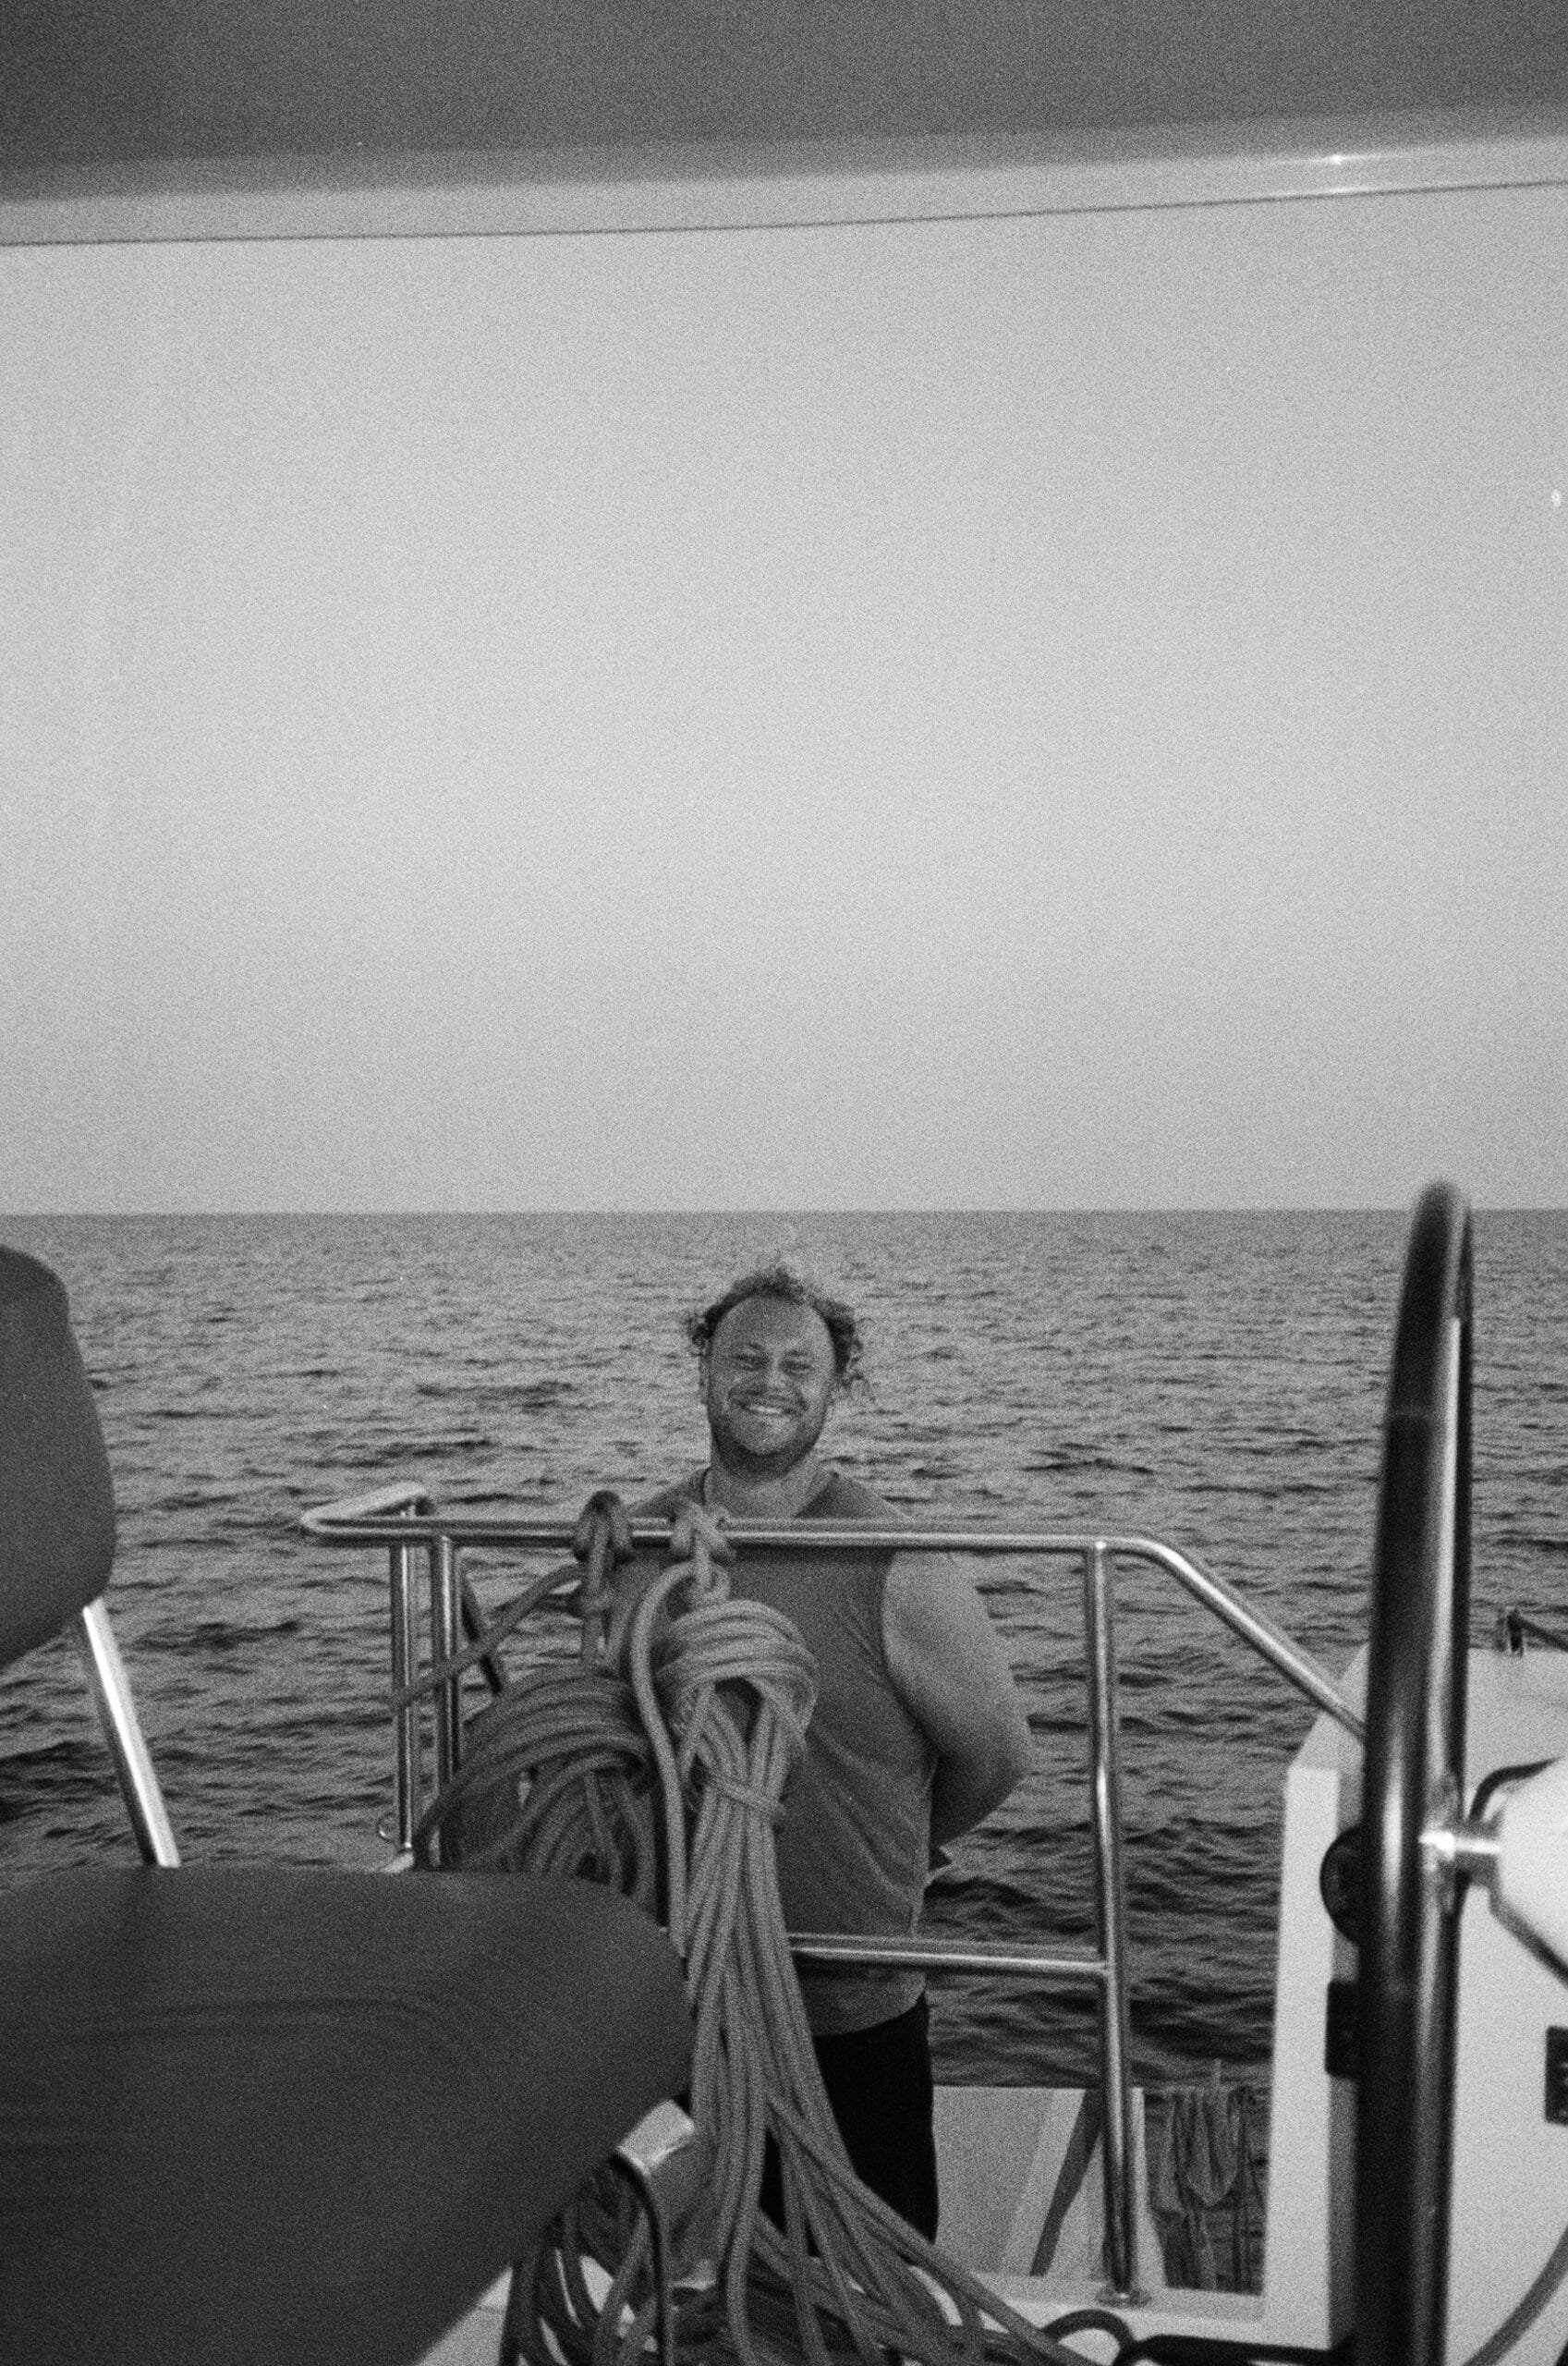 Eine Person steht lächelnd und in einem Tanktop auf einem Boot. Sie steht hinter einem Geländer mit aufgerollten Seilen im Vordergrund. Hinter ihnen erstreckt sich der Ozean unter einem klaren Himmel. Das Schwarzweißbild fängt die Essenz ihrer Segelreise auf einem schnittigen Katamaran ein.